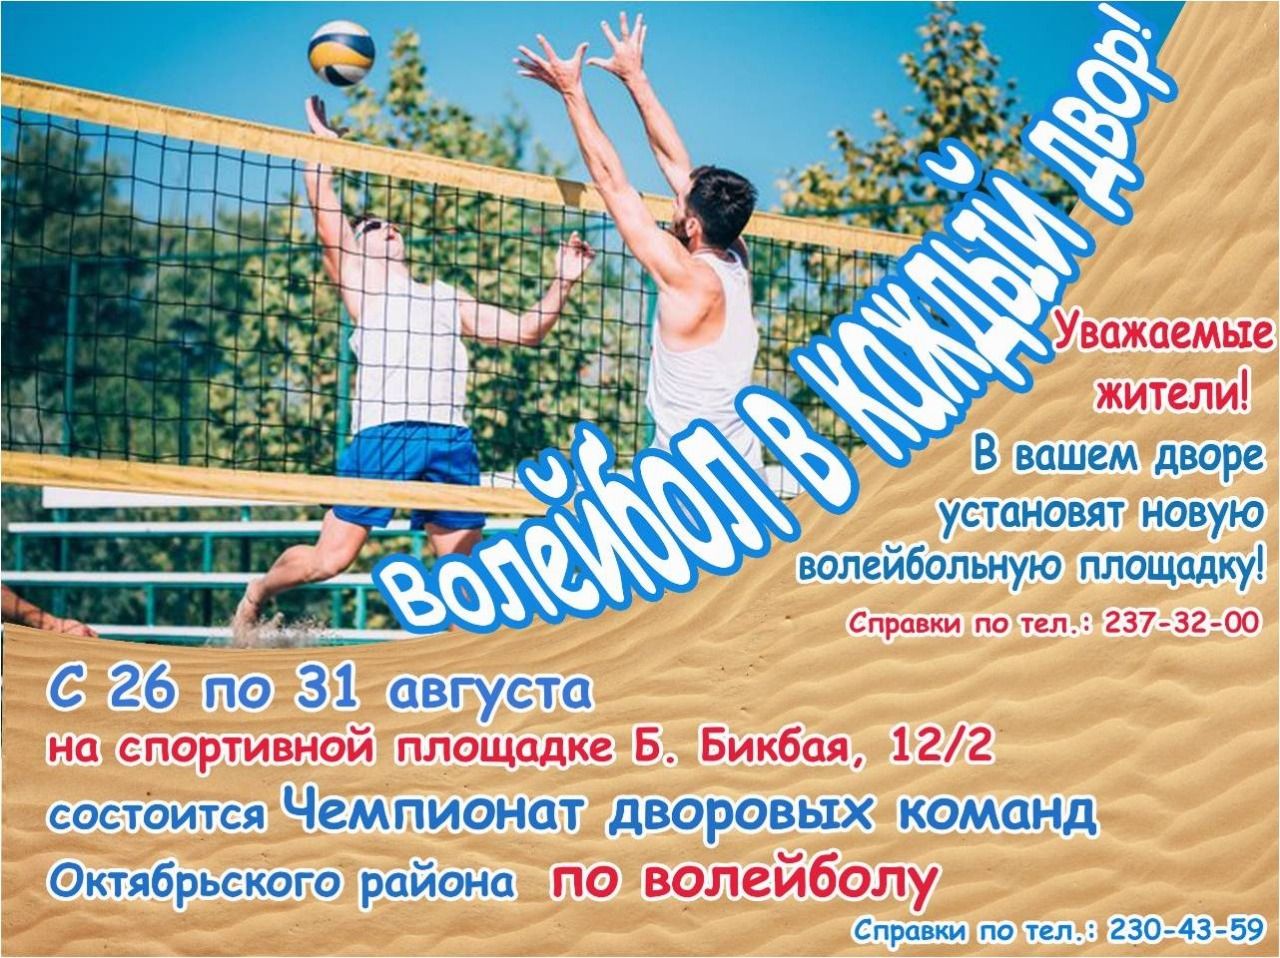 В Октябрьском районе  пройдут дворовые соревнования по волейболу